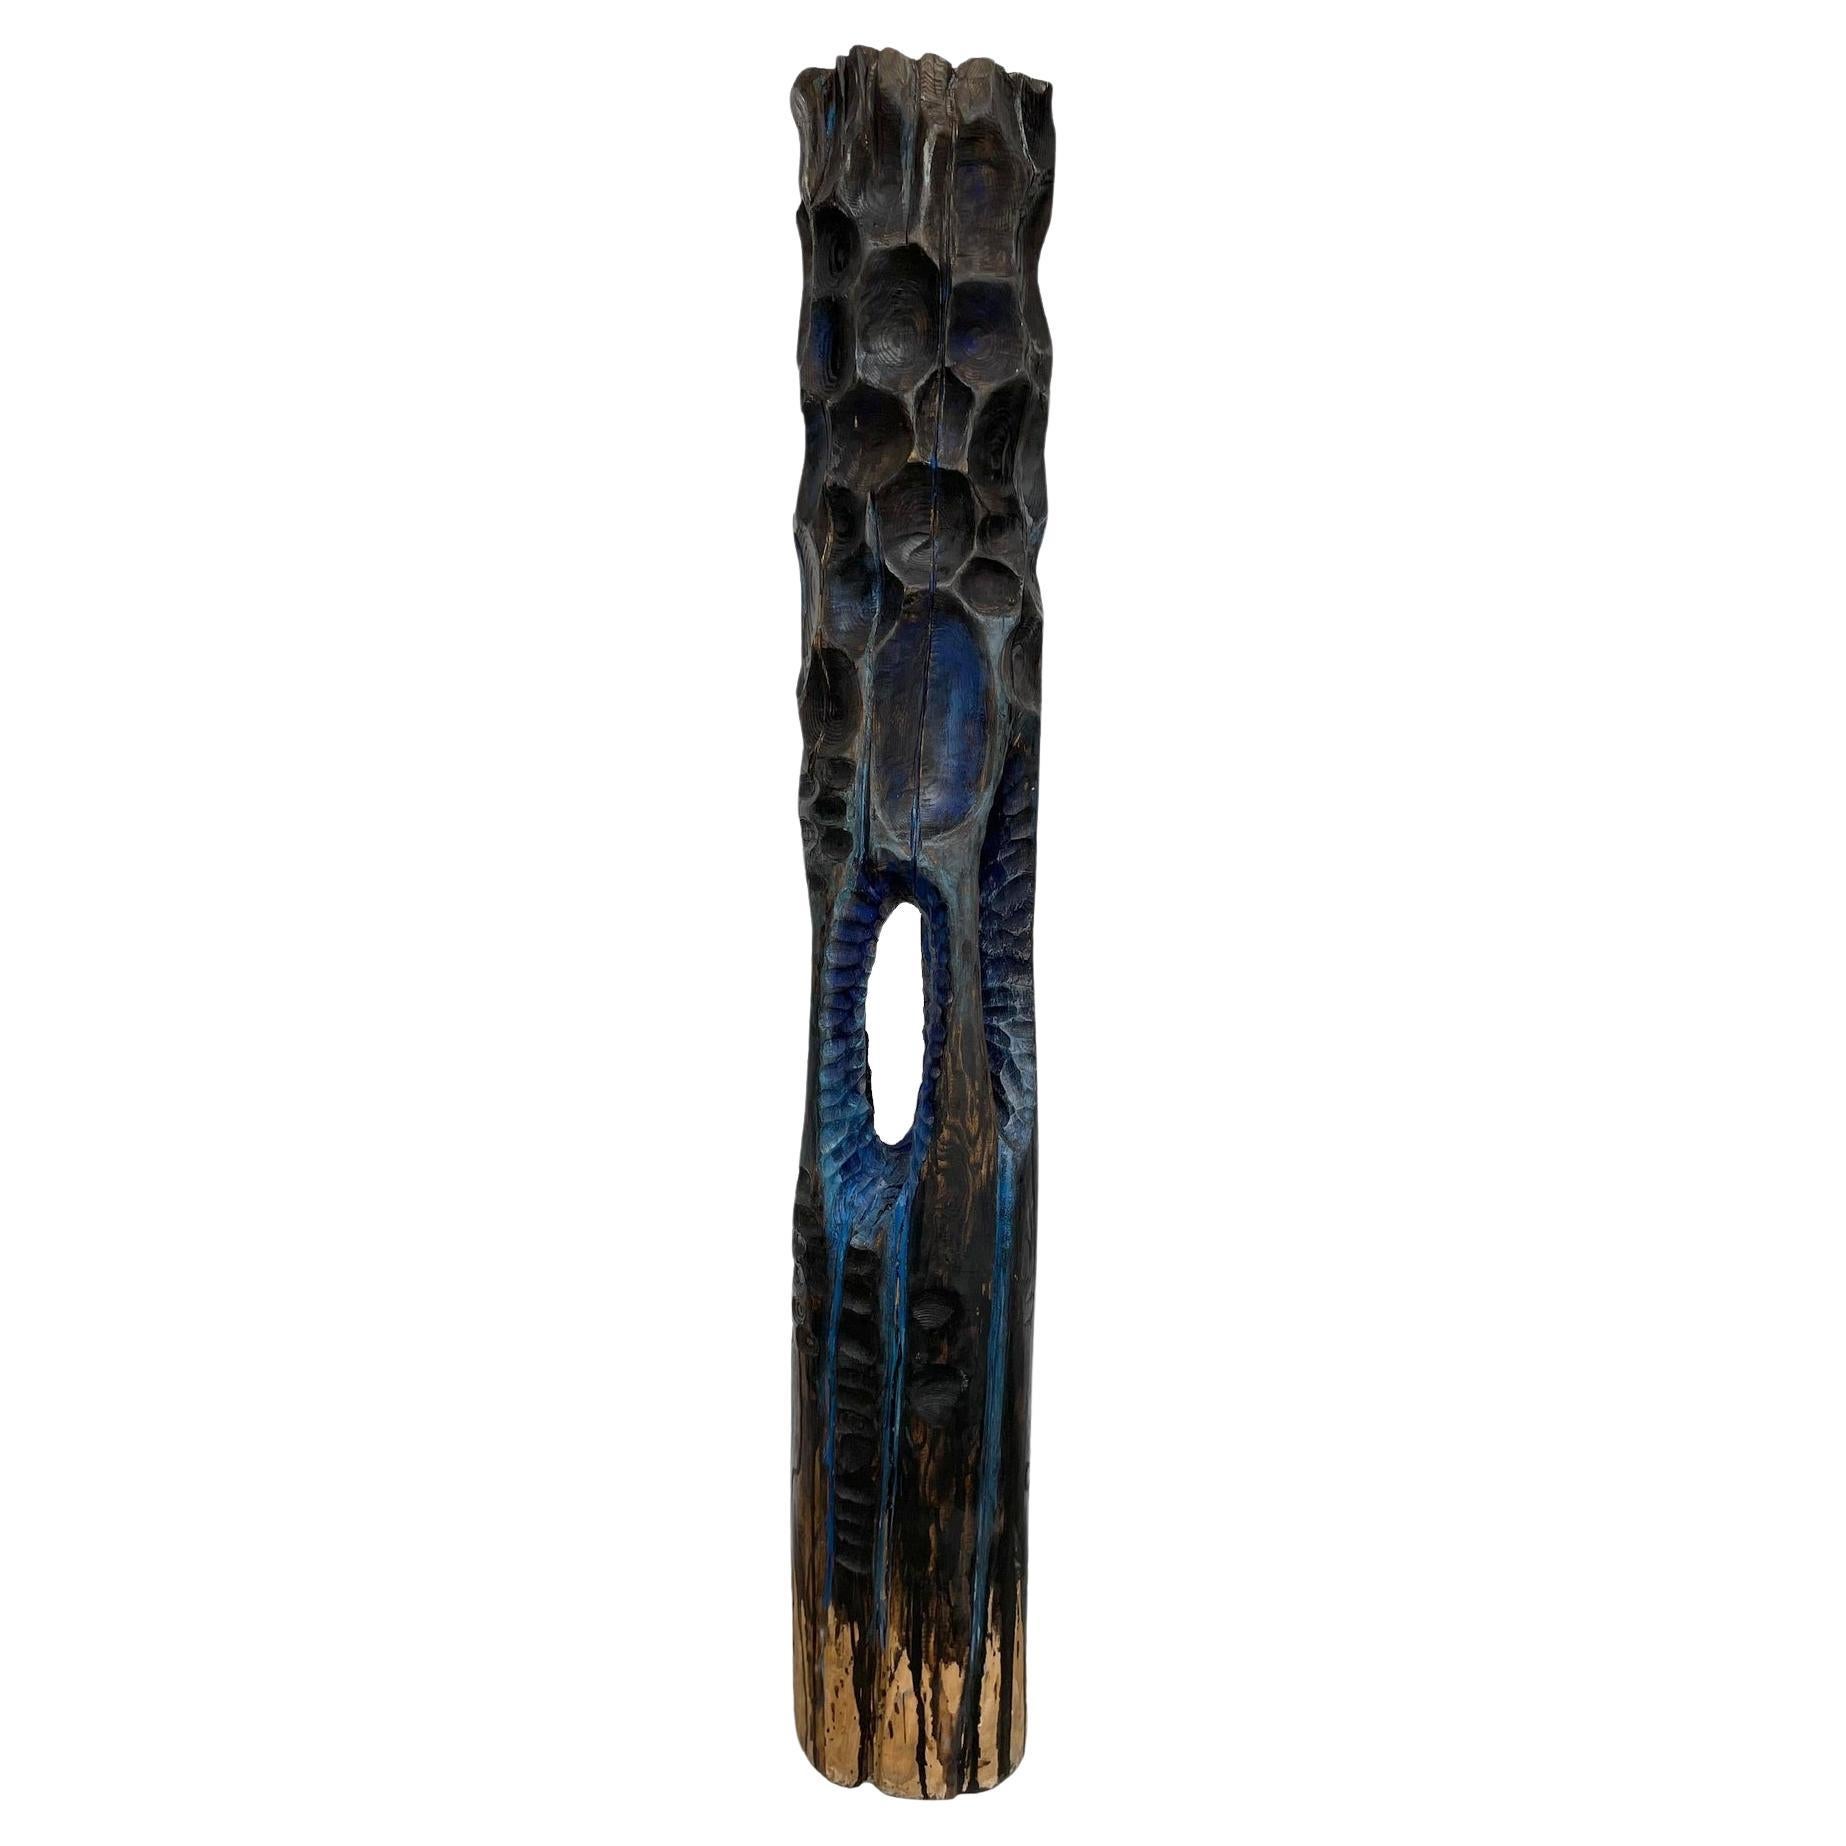 Skulptur „Totem“ aus Holz mit blauer Patina